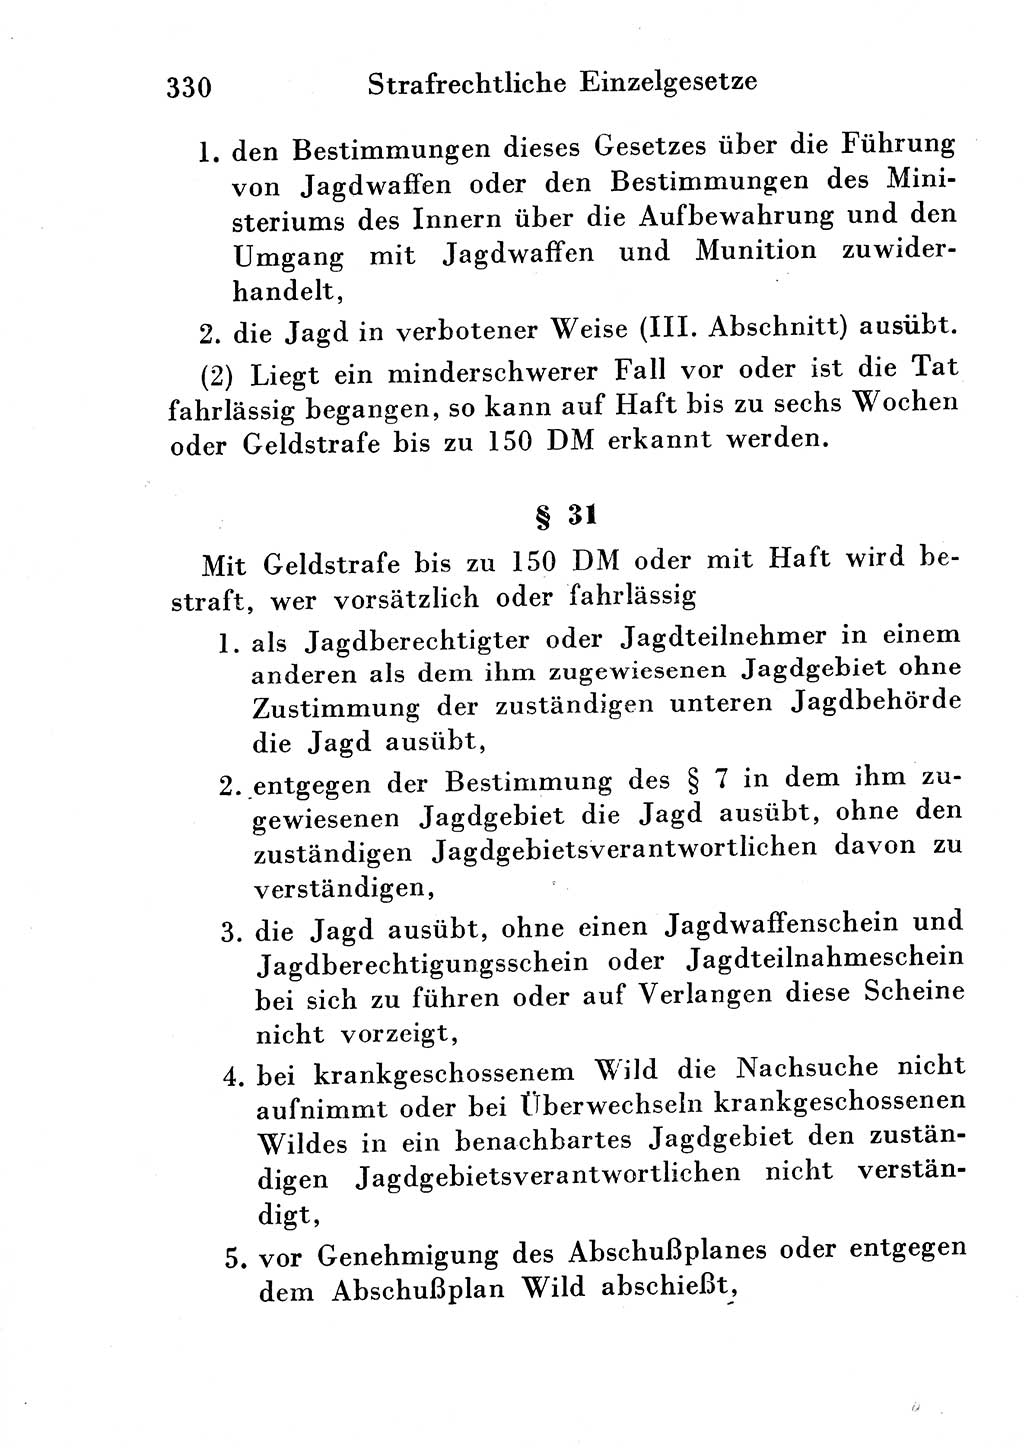 Strafgesetzbuch (StGB) und andere Strafgesetze [Deutsche Demokratische Republik (DDR)] 1954, Seite 330 (StGB Strafges. DDR 1954, S. 330)